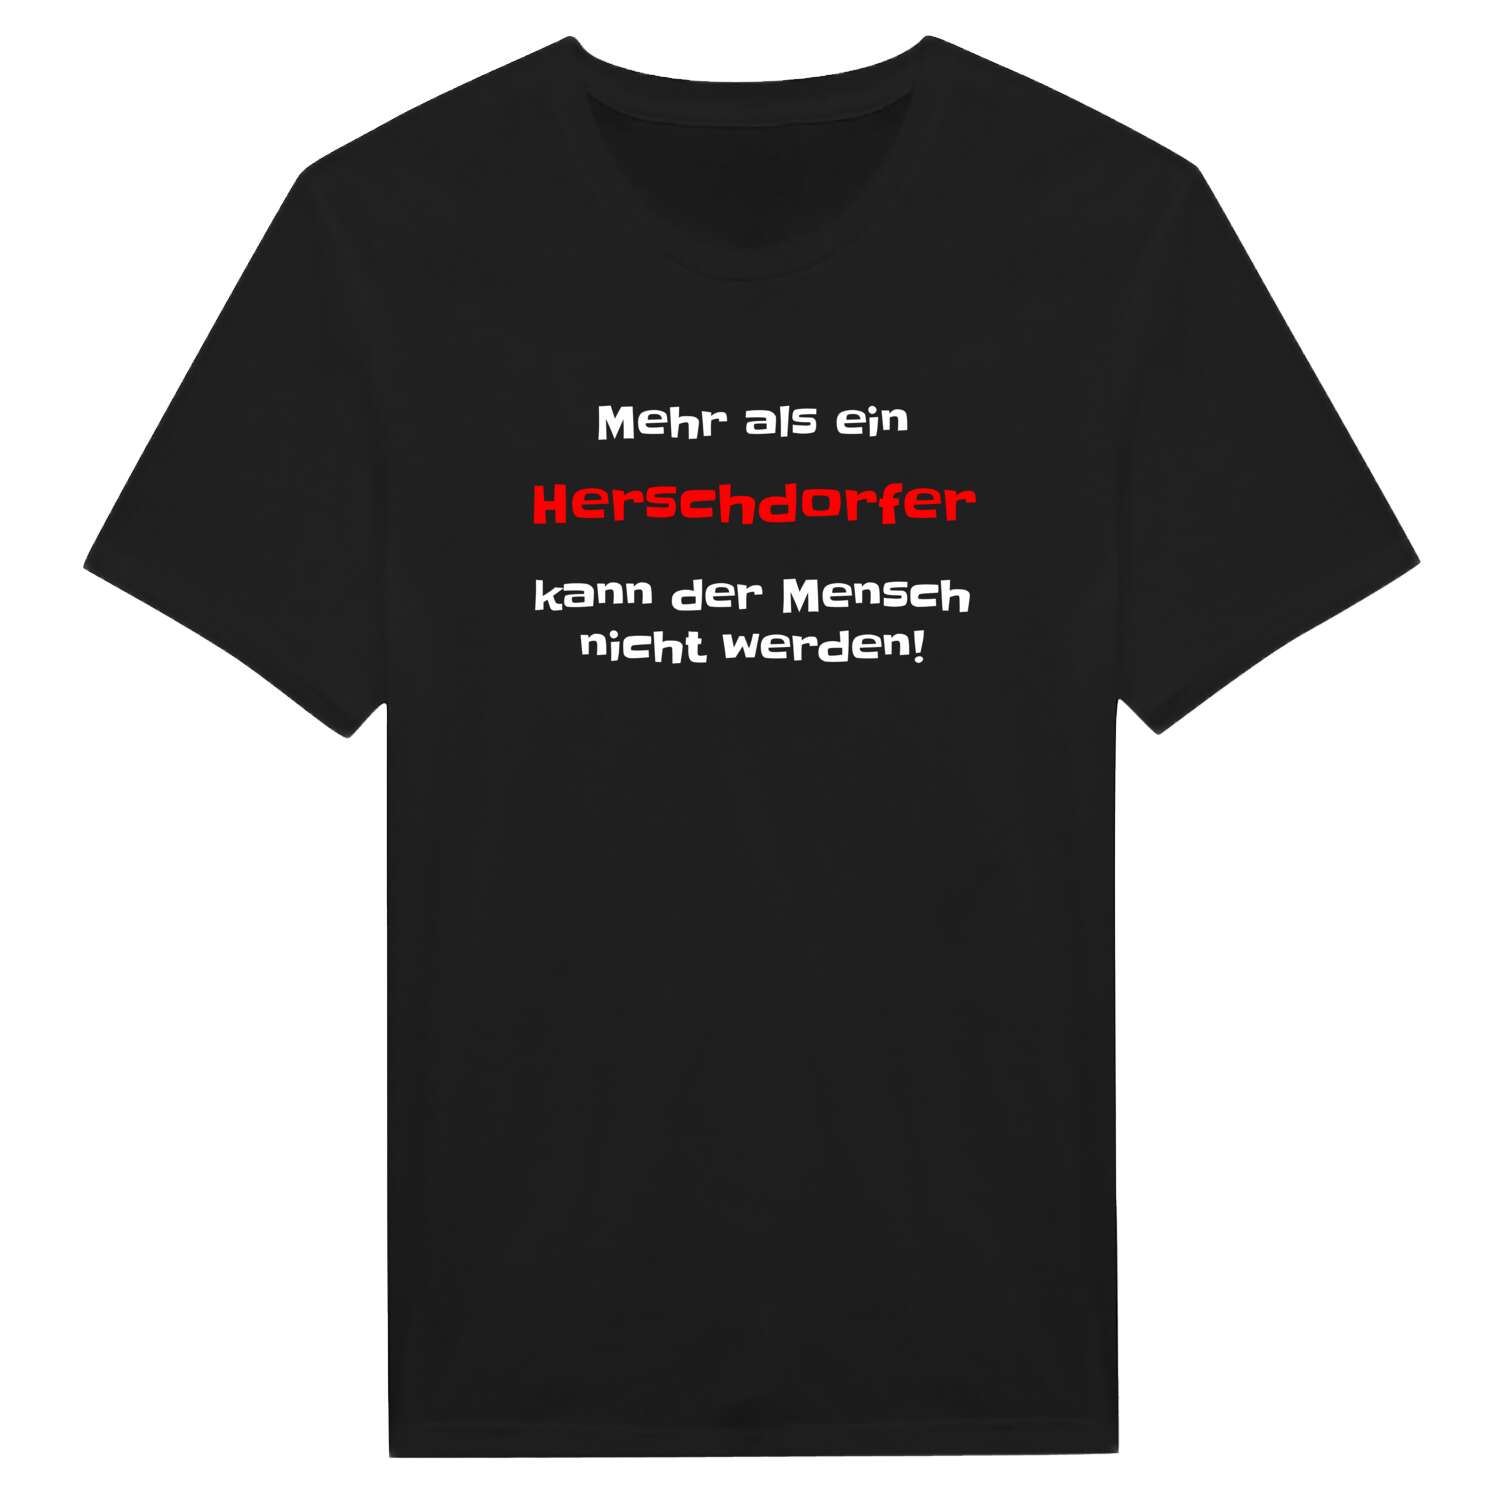 Herschdorf T-Shirt »Mehr als ein«